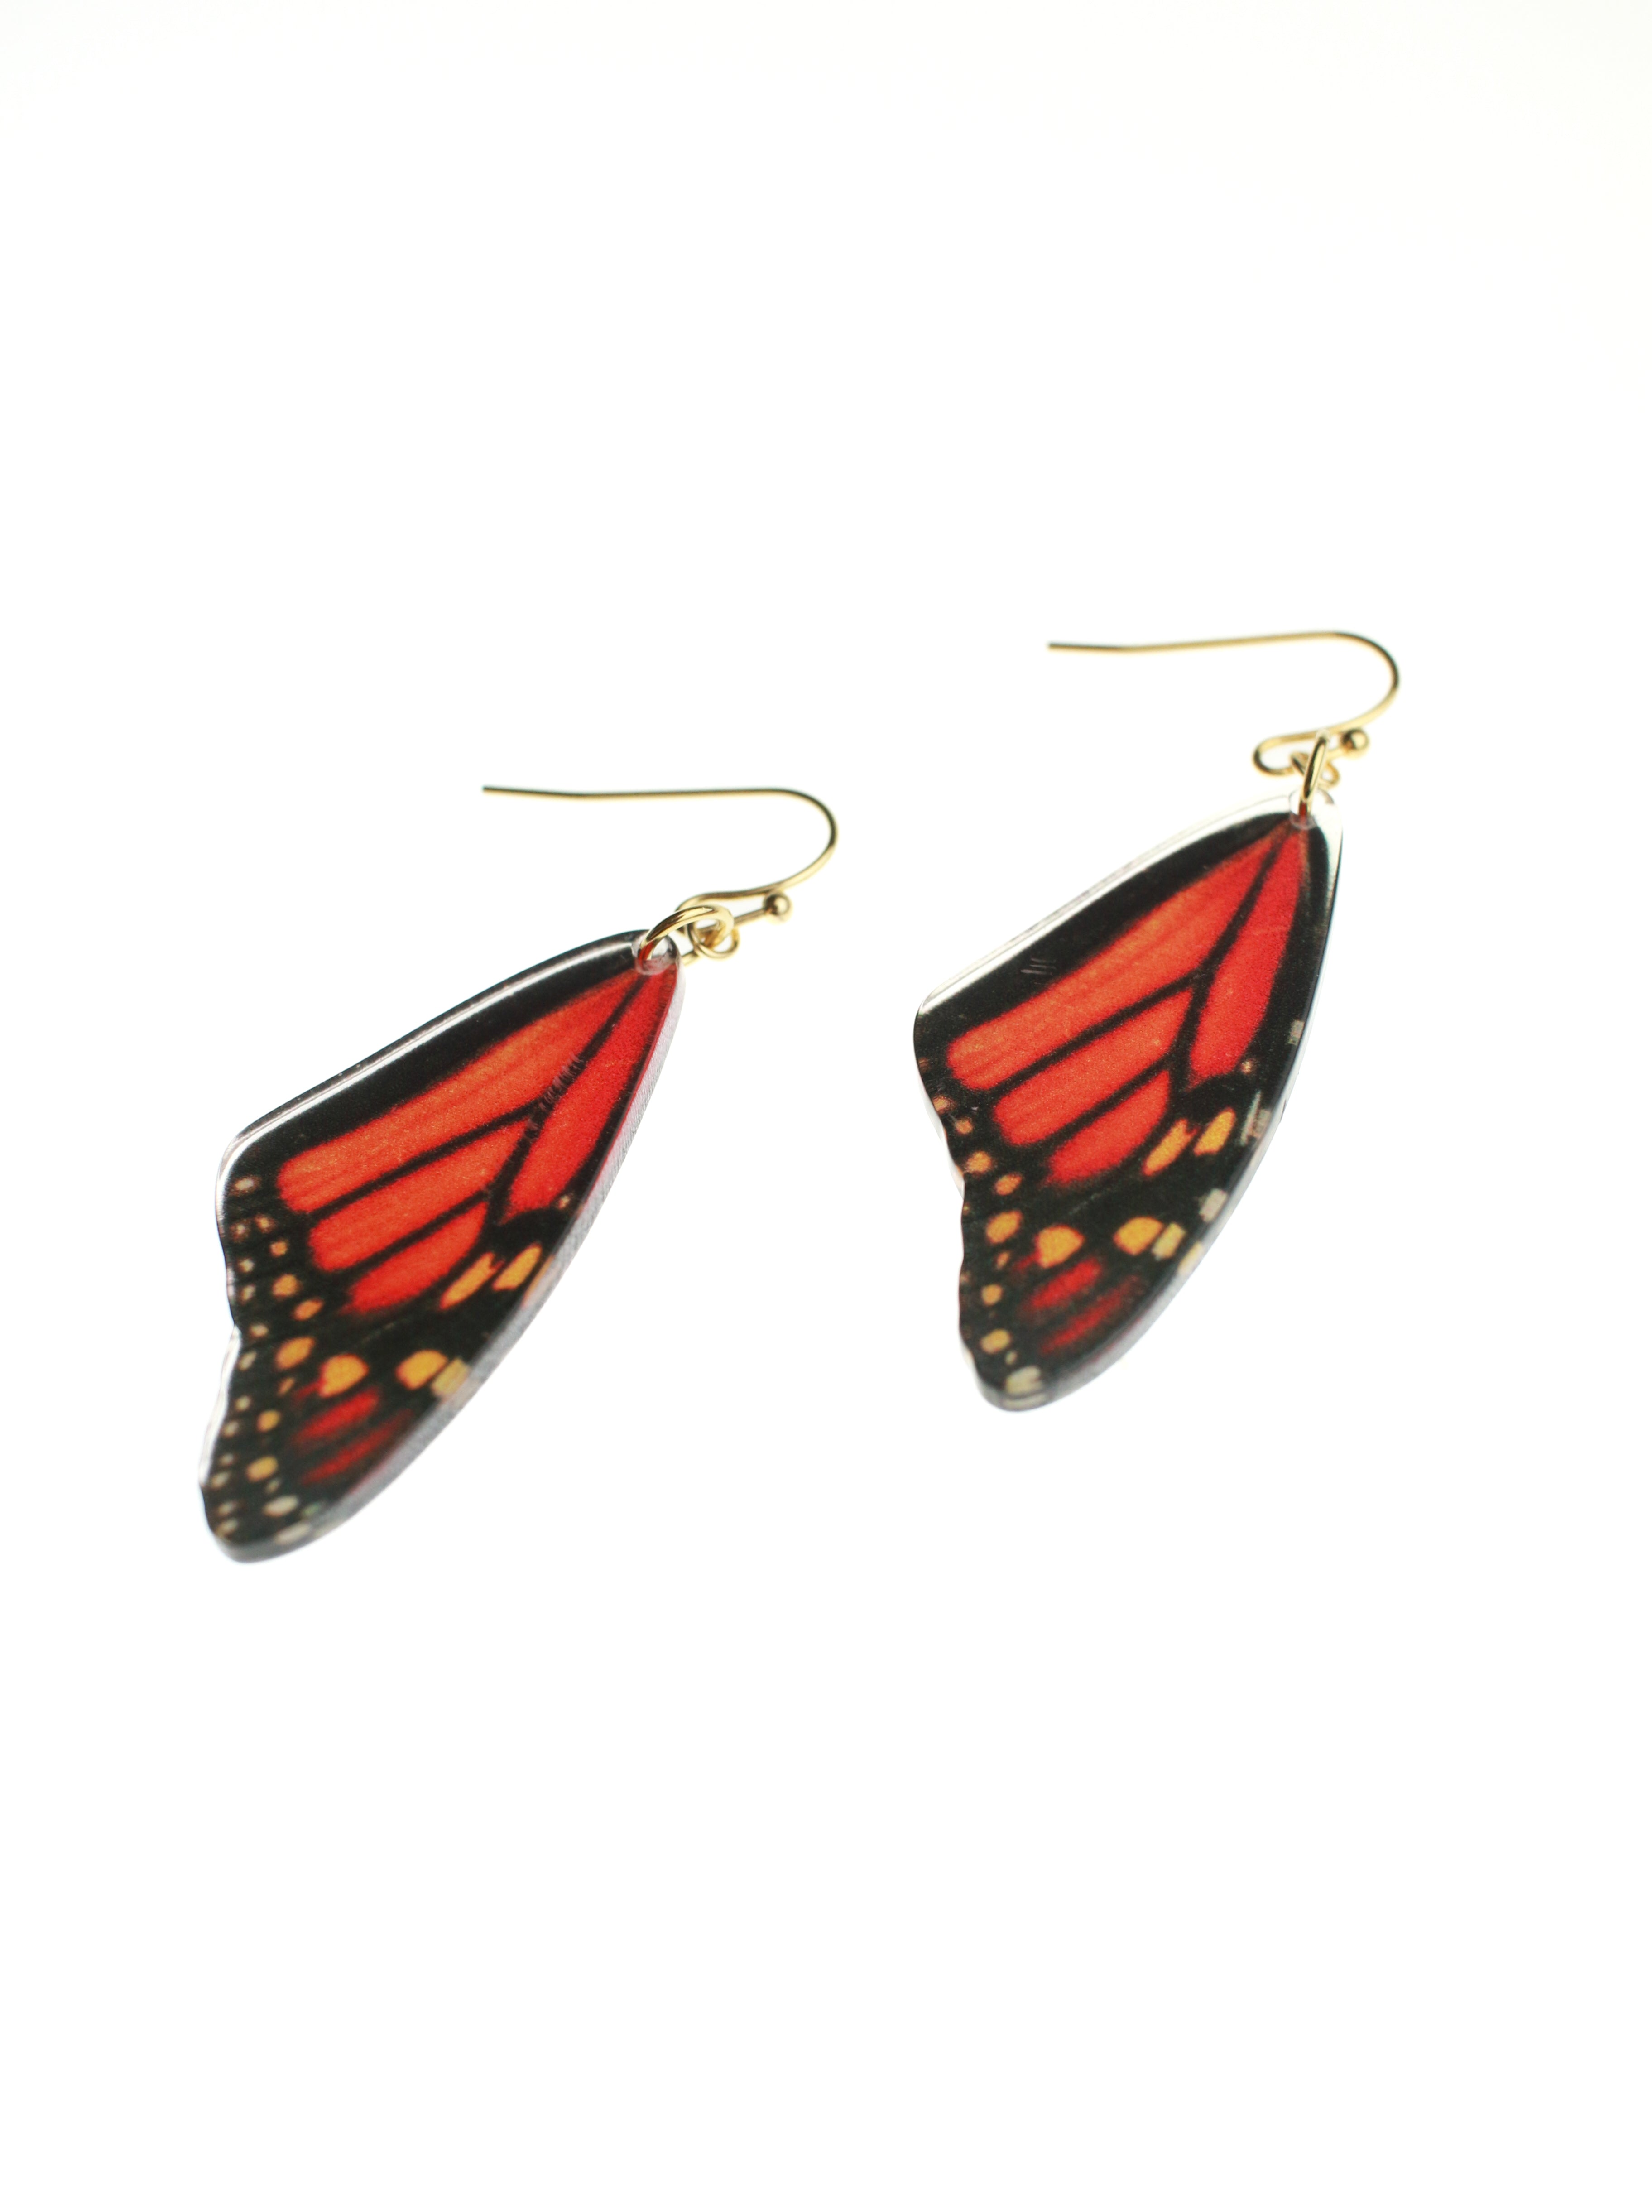 Butterfly Wing Earrings (Orange) | Stitch & Stone